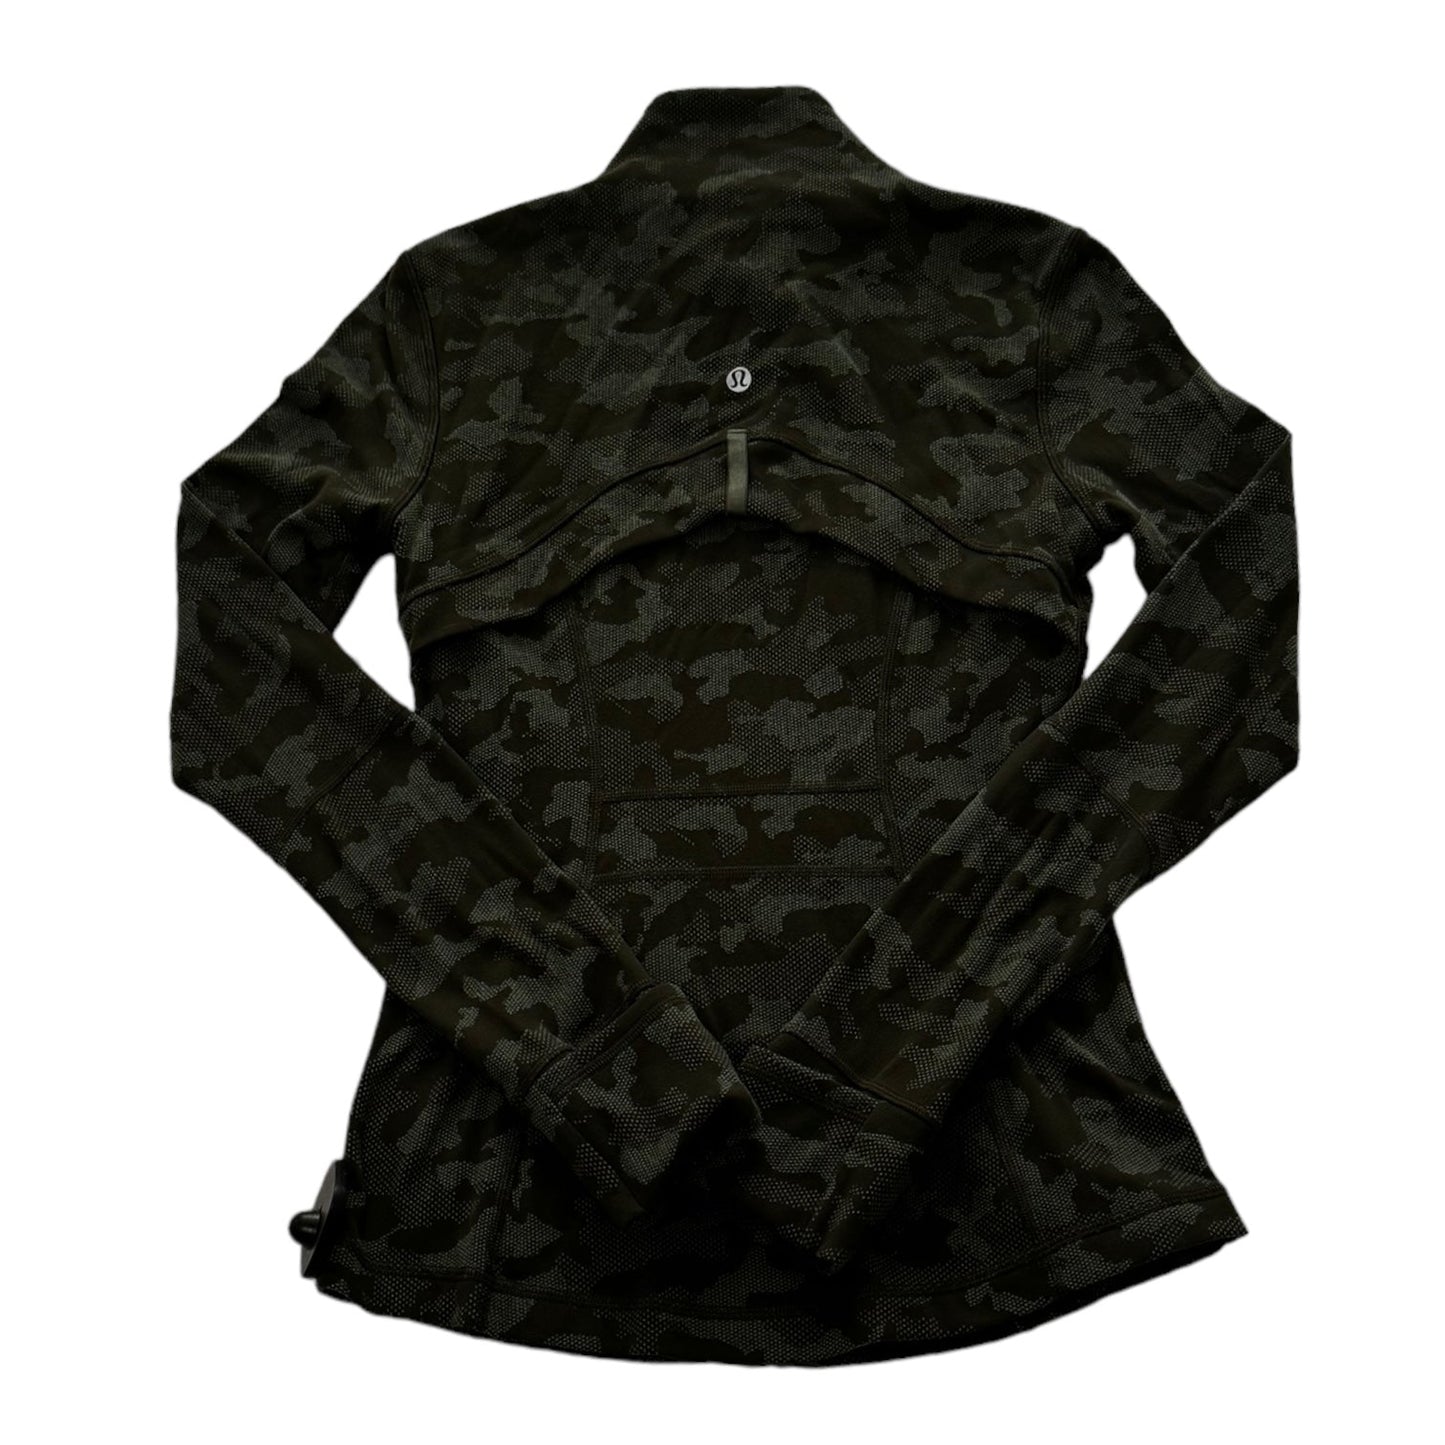 Camouflage Print Athletic Jacket Lululemon, Size 4